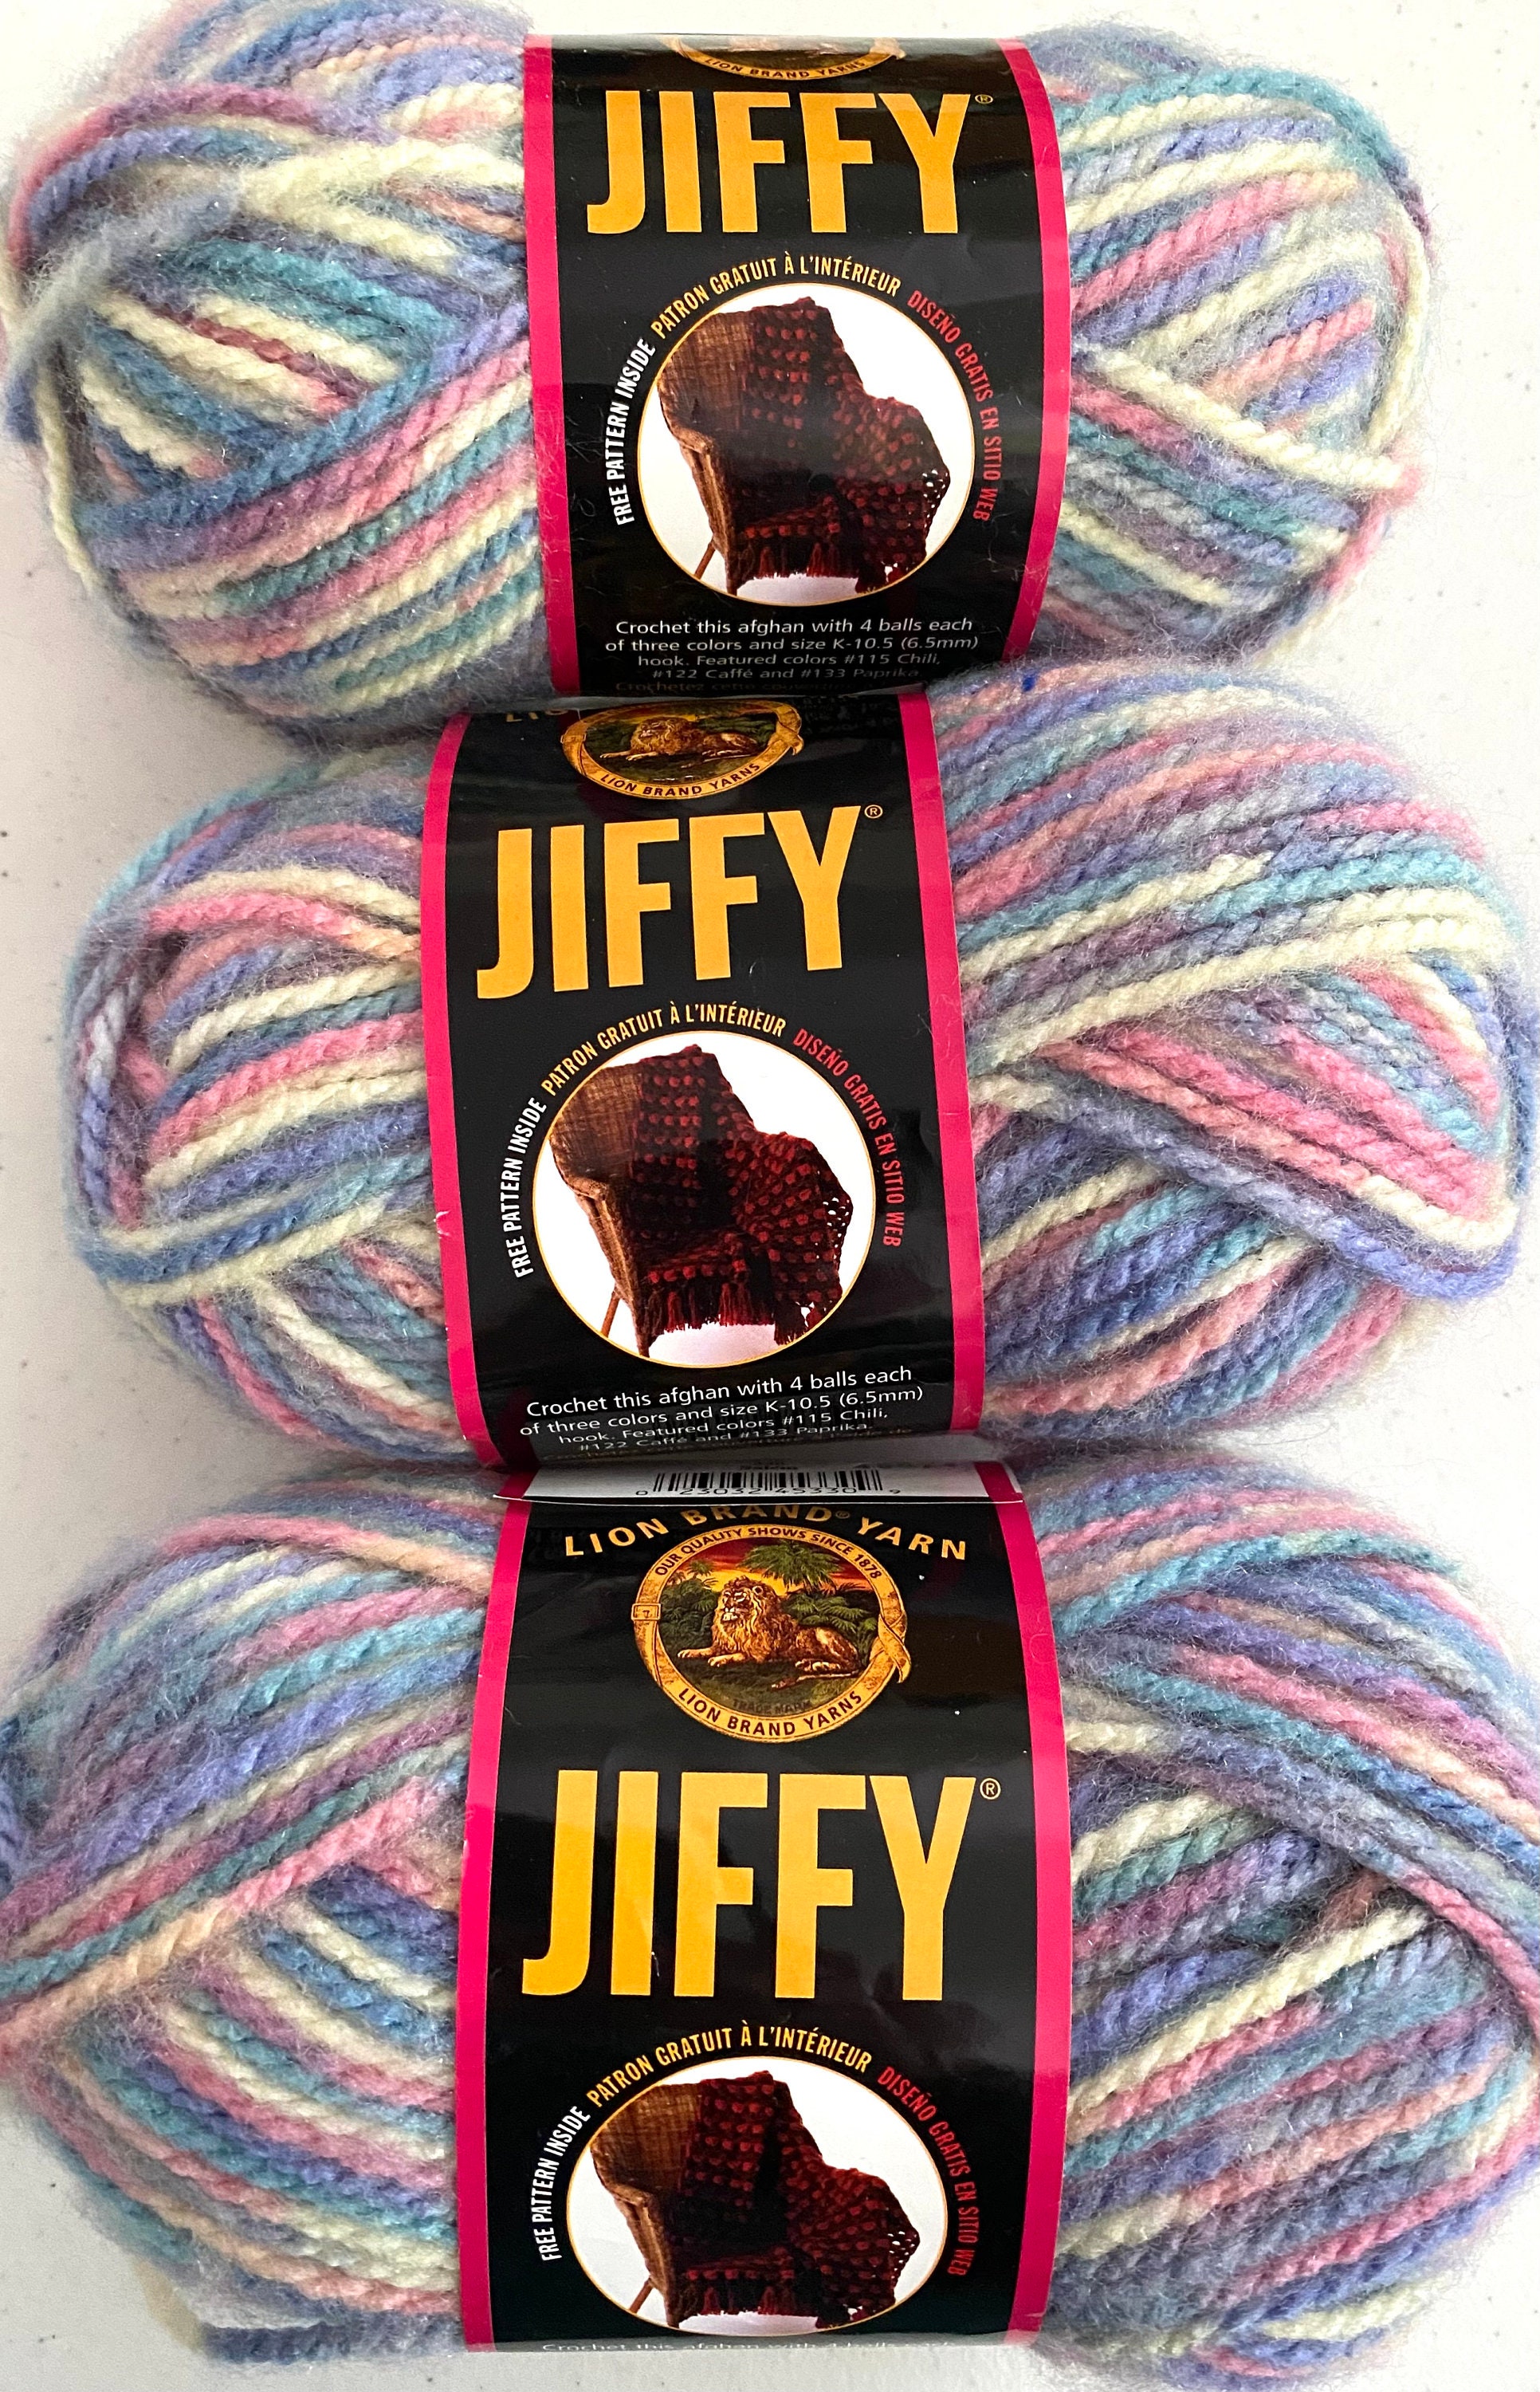 I found new Lion Brand Jiffy yarn : r/Yarn